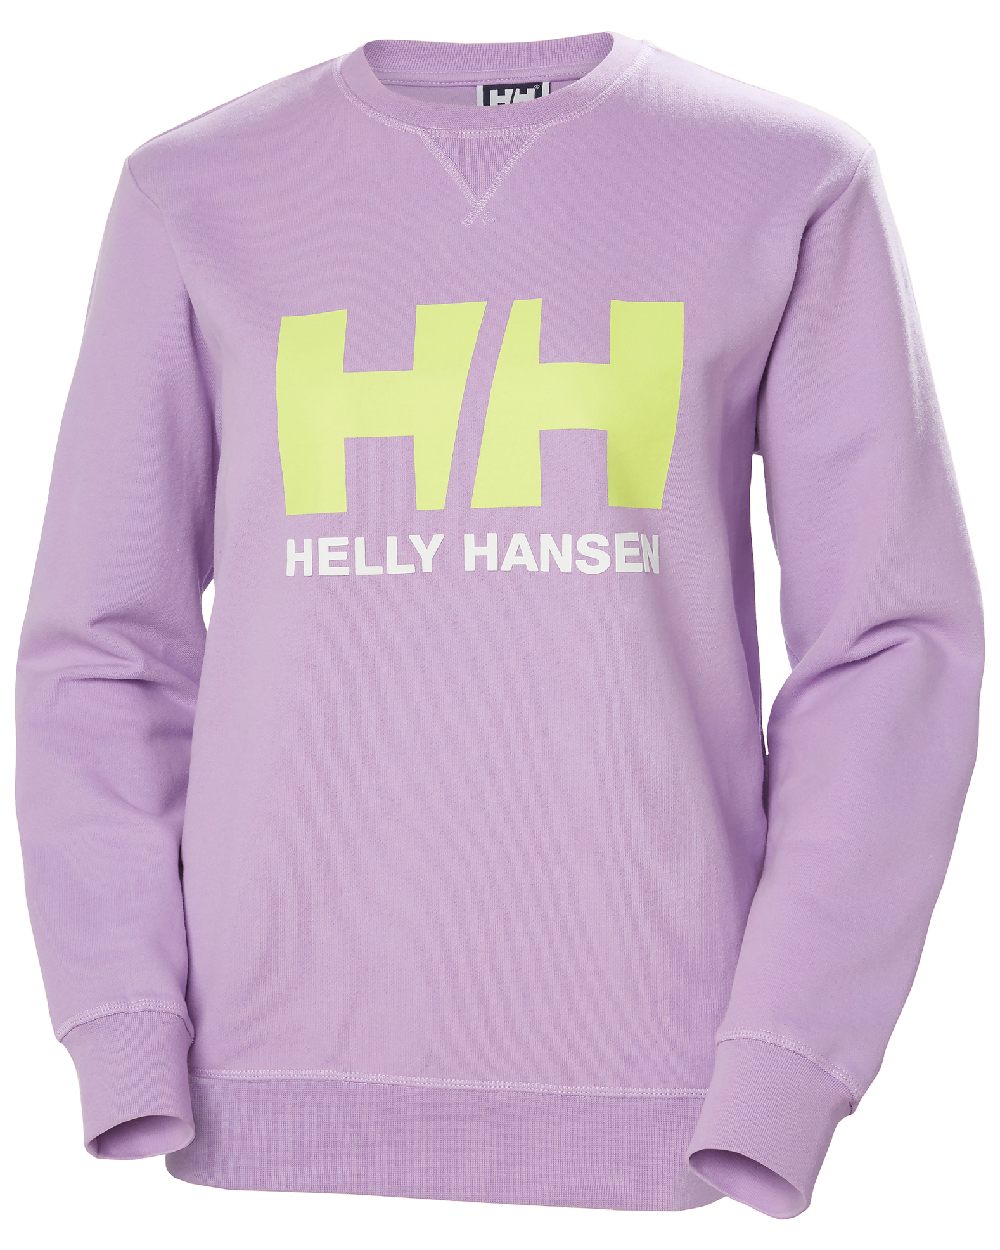 Heather coloured Helly Hansen Womens Logo Crew Sweatshirt on white background 